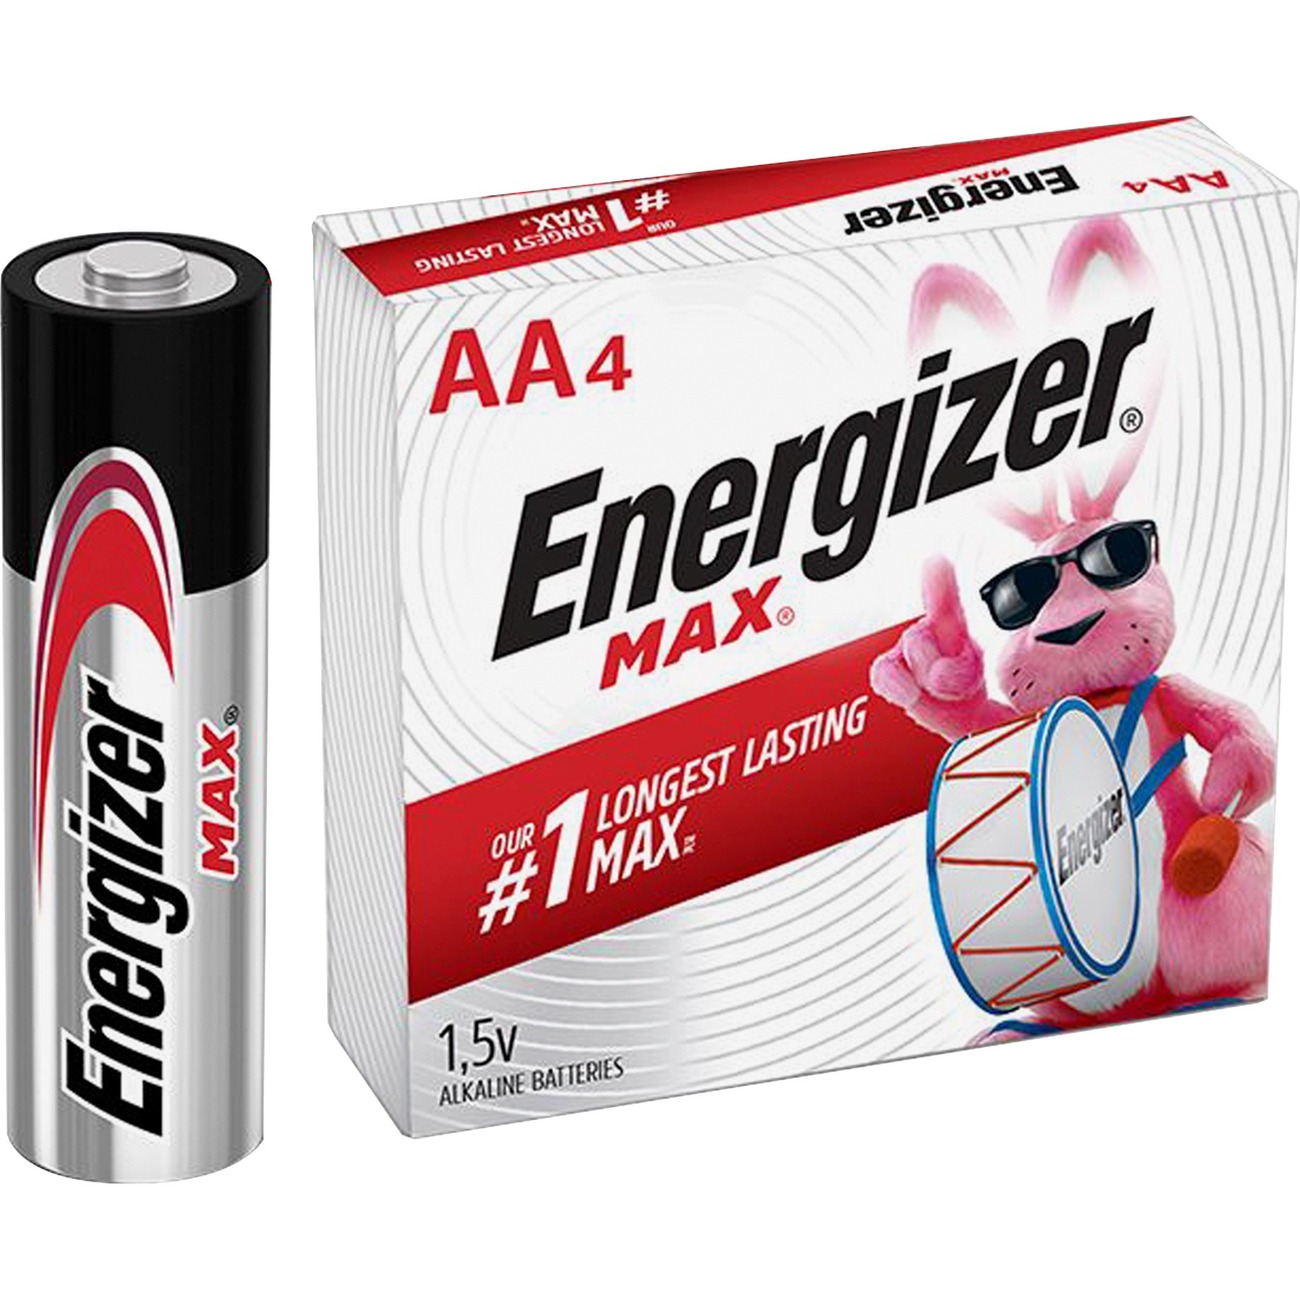 Energizer Max AA Alkaline Batteries 1.5 V, 4/Pack